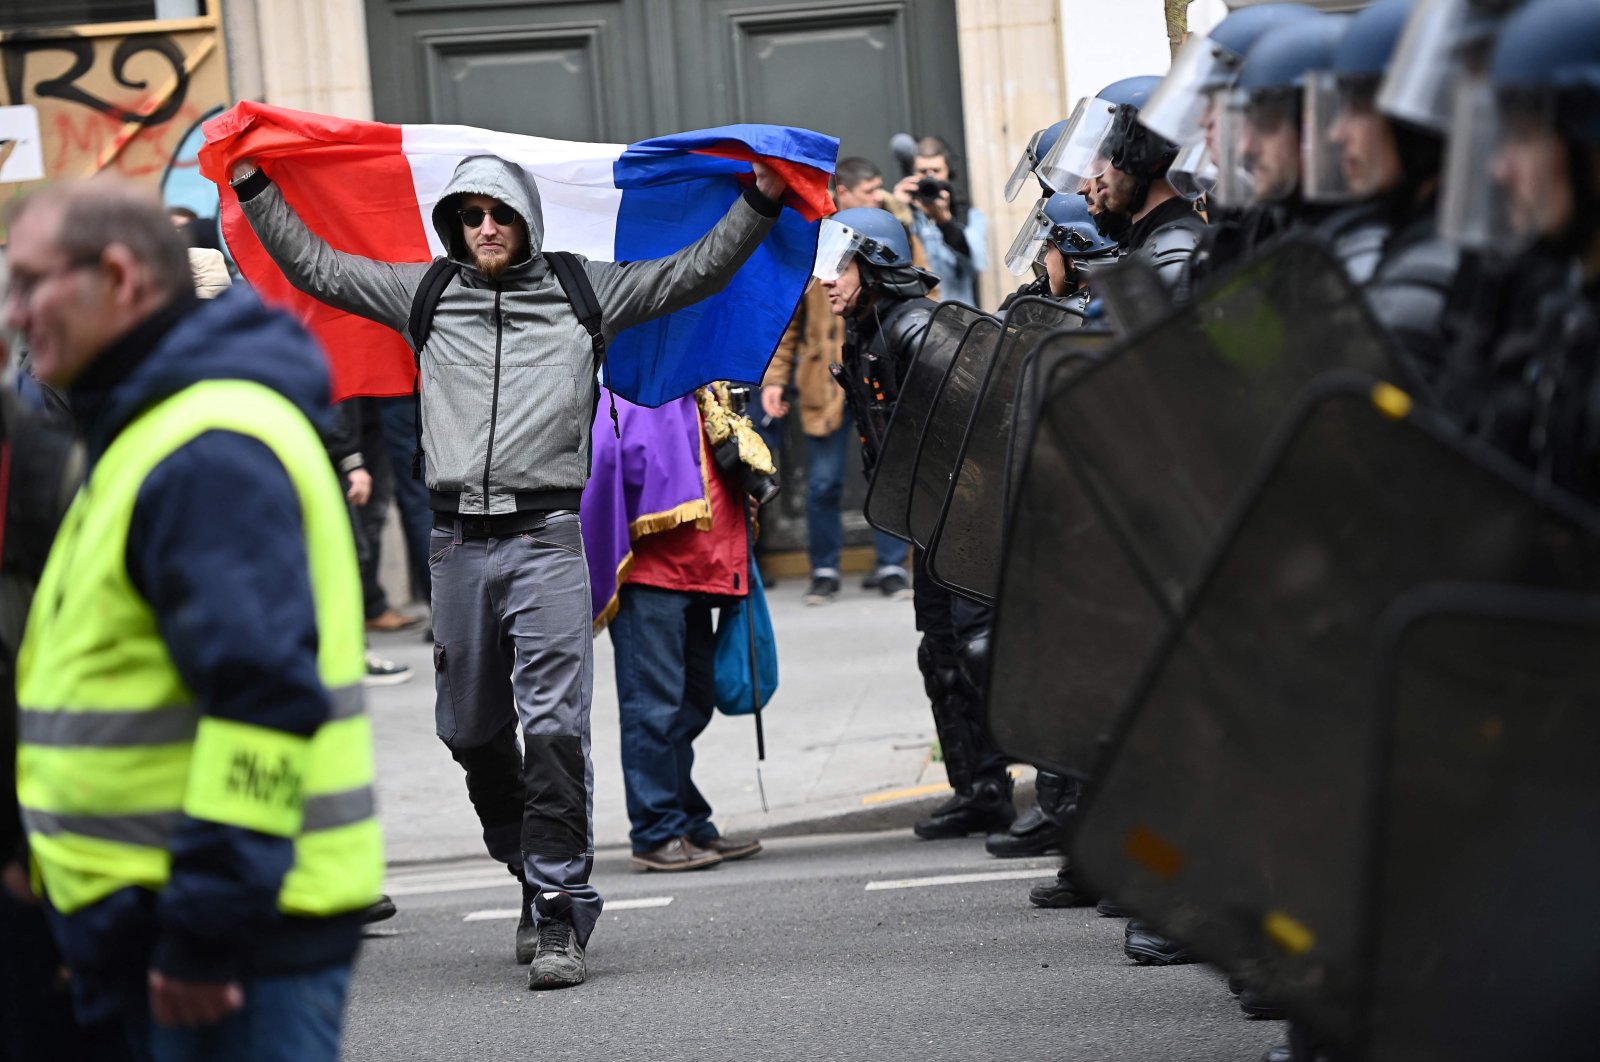 Prancis Dalam Kekacauan: Apakah Kerusuhan Itu Gerakan Sosial atau Krisis Politik?